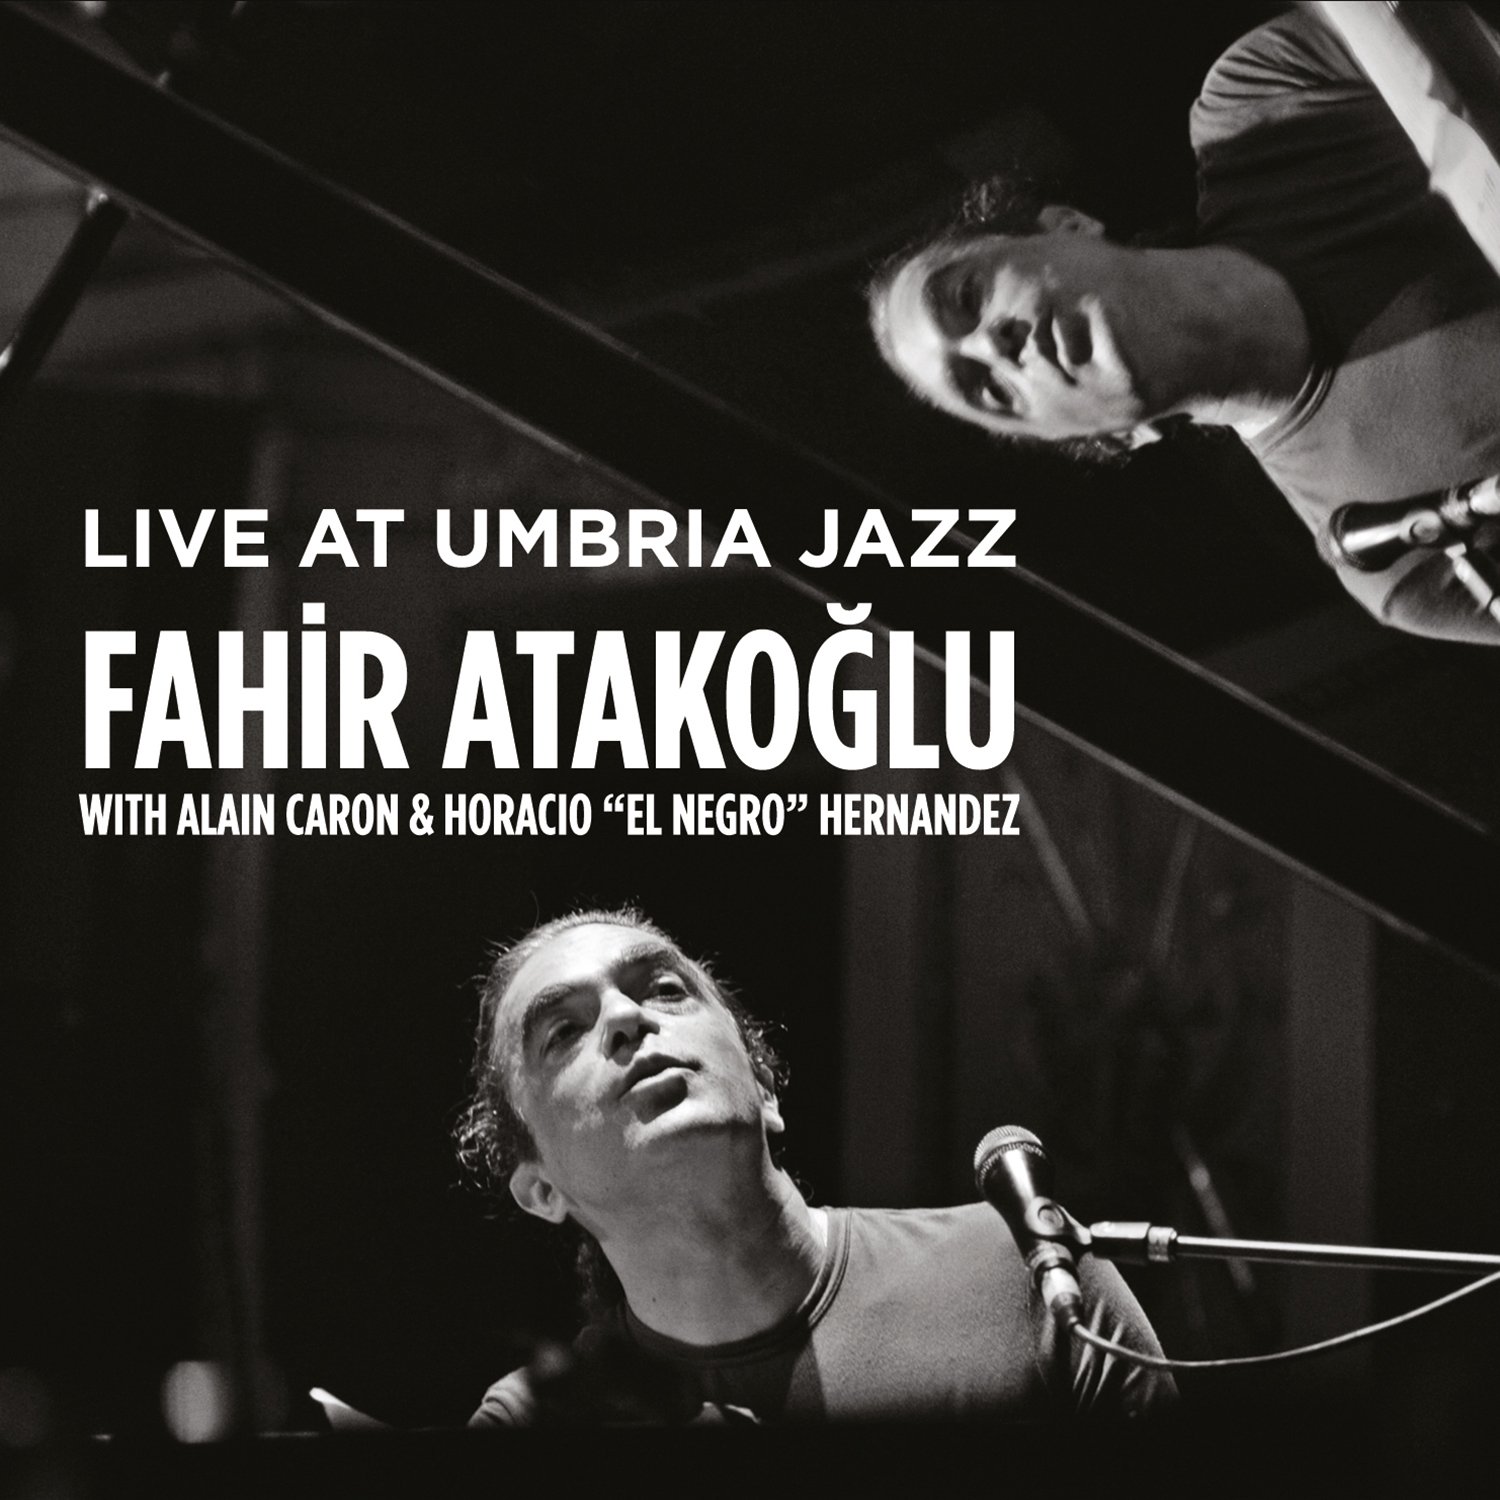 Fahir Atakoğlu Live at Umbria Jazz